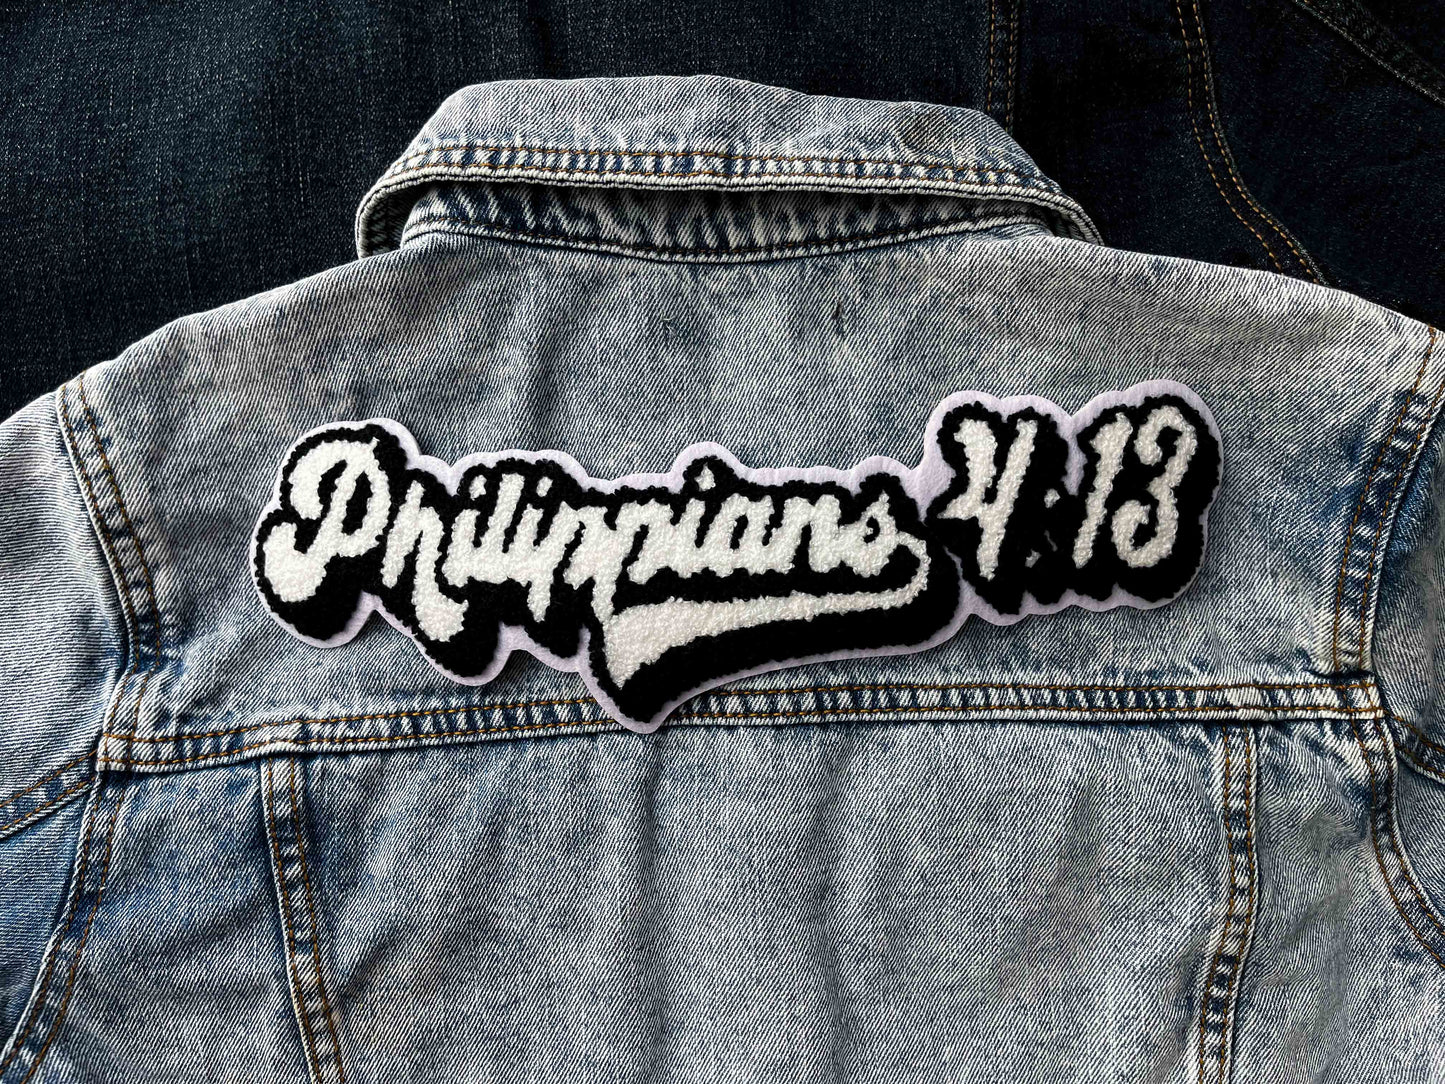 Philippians 4:13 Patch